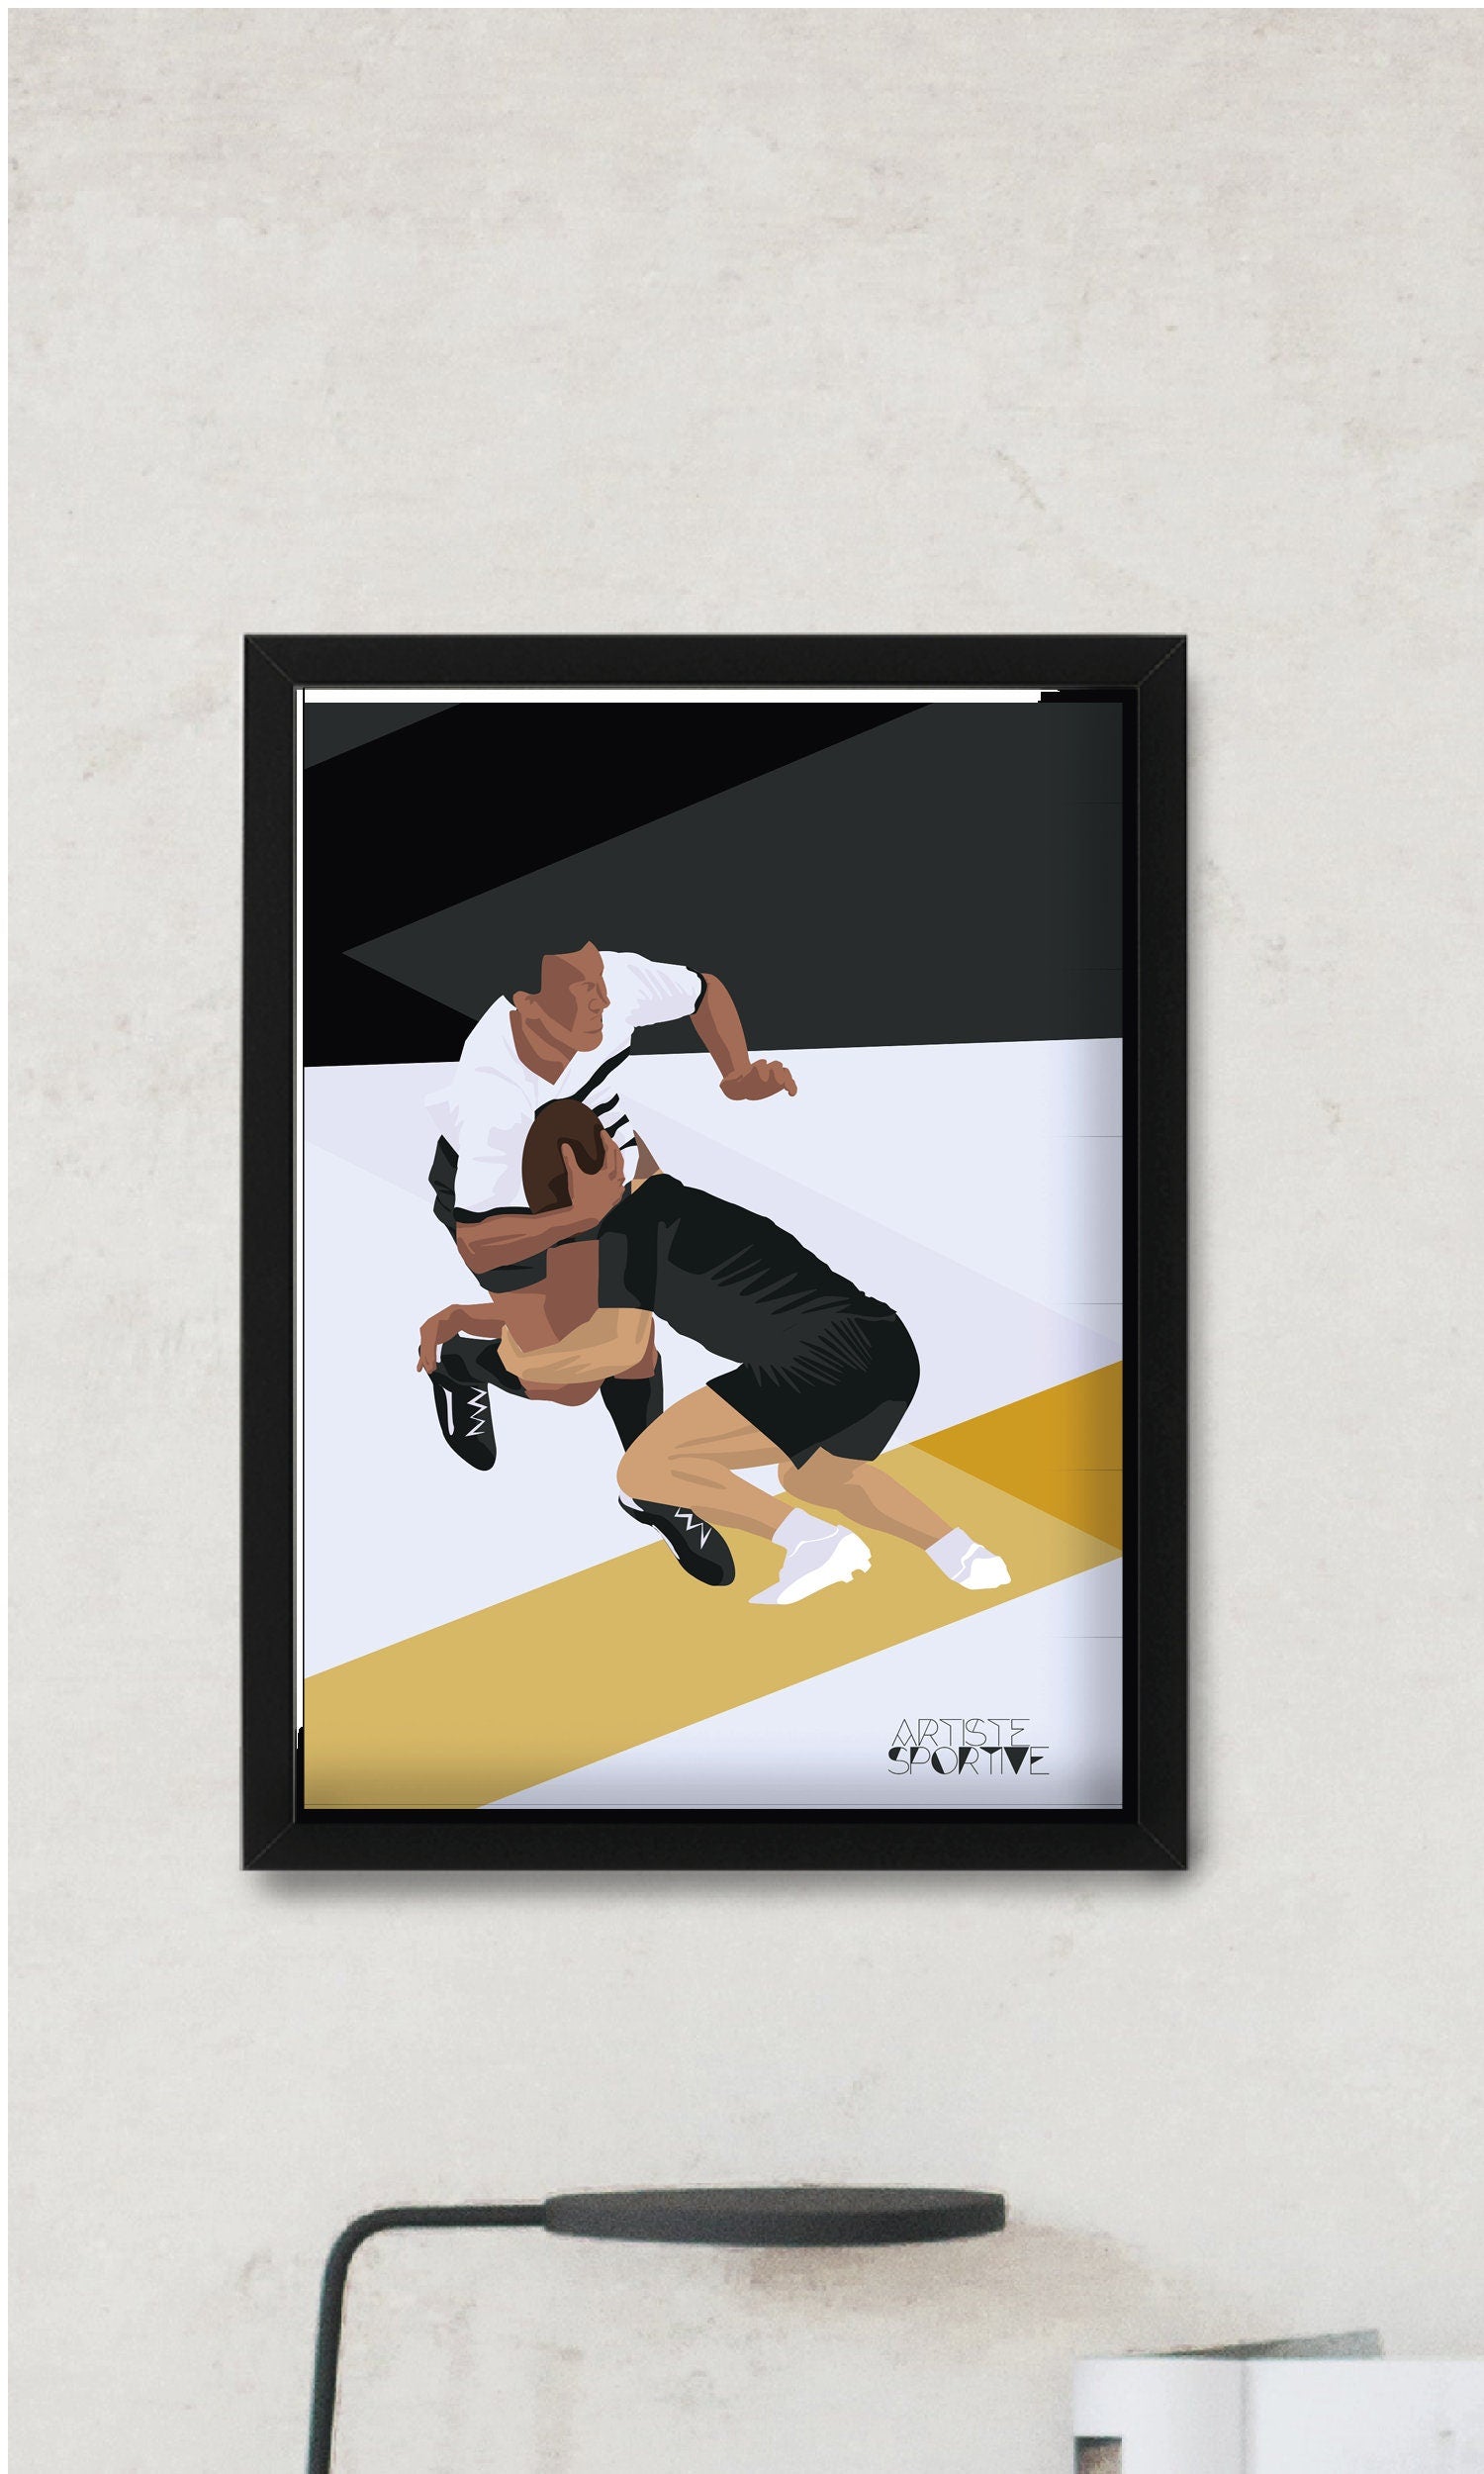 Une Affiche Pour Le Jeu De Rugby Avec Un Homme Dans Un Casque D'or Et Un  Homme Dans Une Chemise Noire.